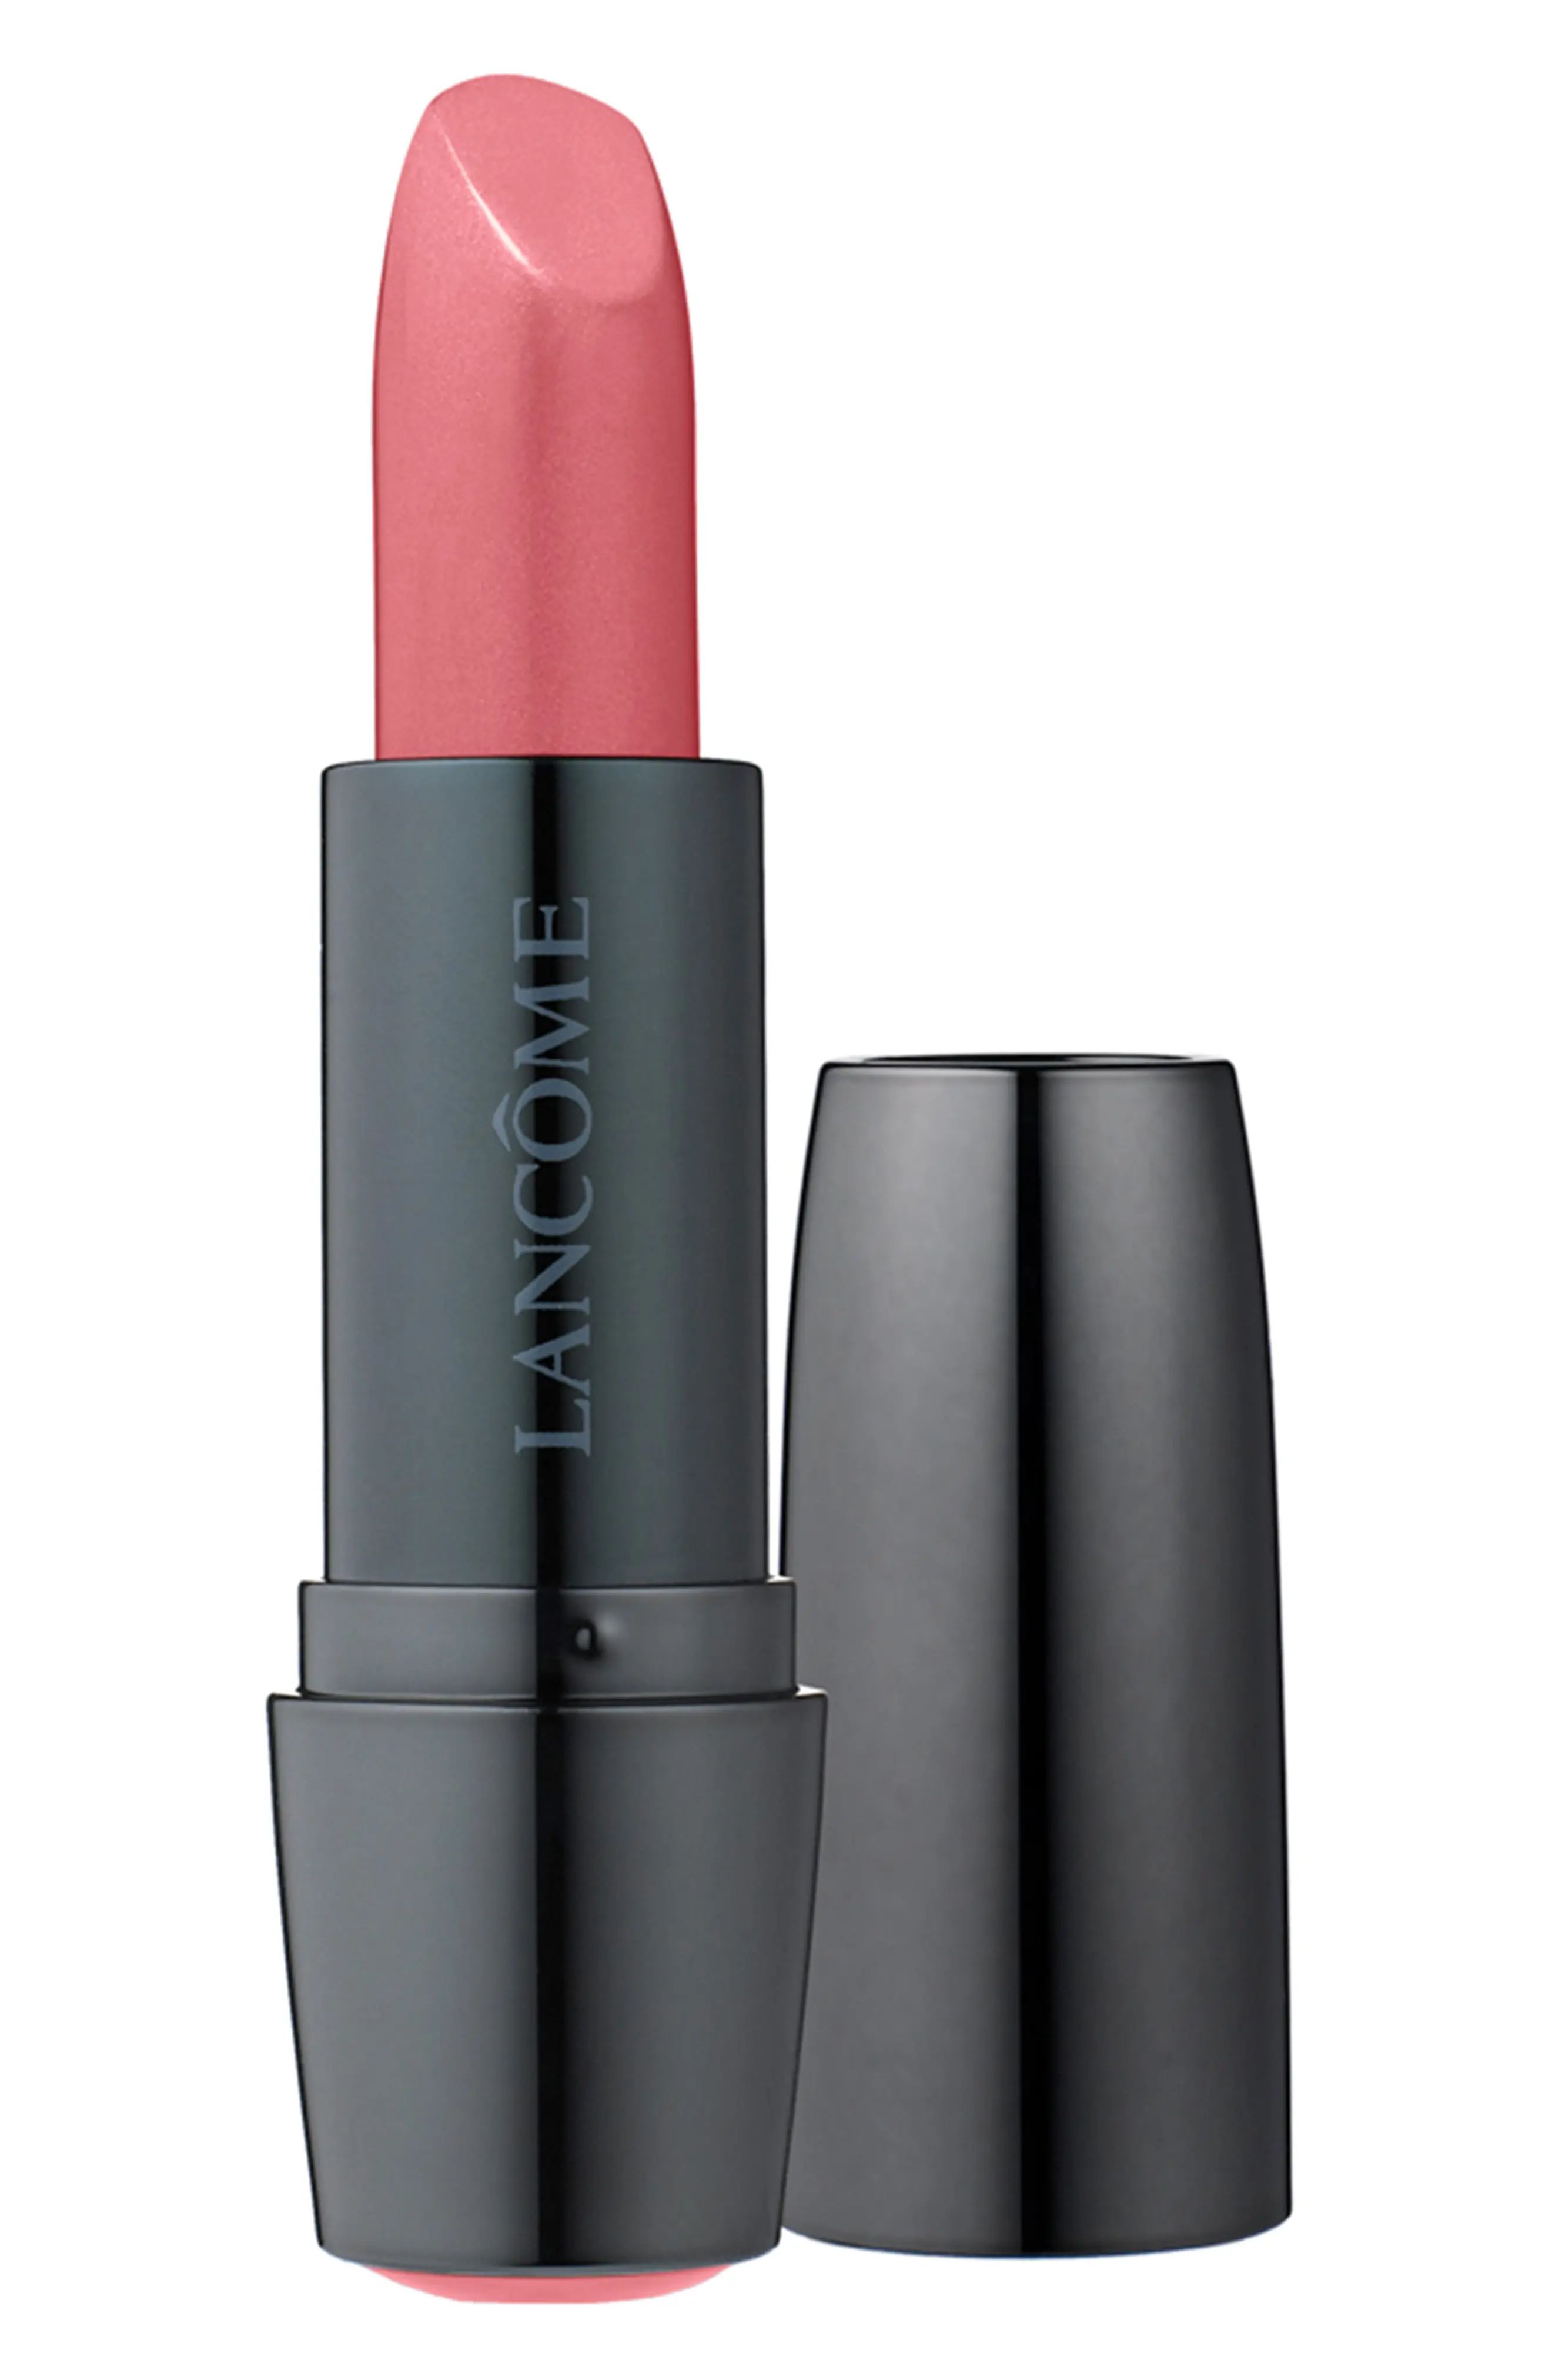 Lancome Color Design Lipstick in Vintage Rose at Nordstrom | Nordstrom